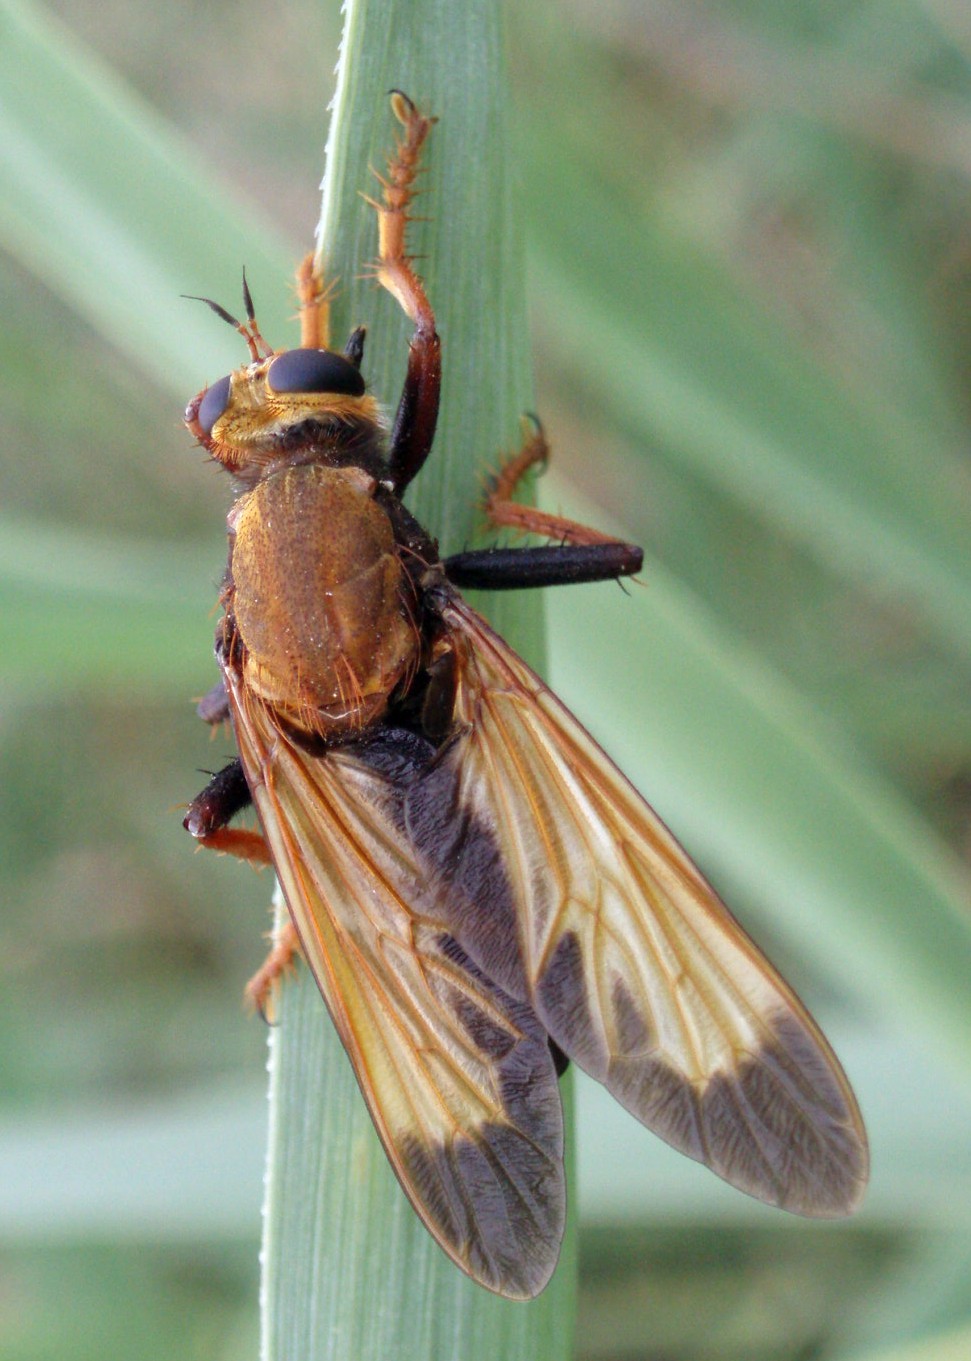 Spagna: La regione  de Monegros, paradiso entomologico